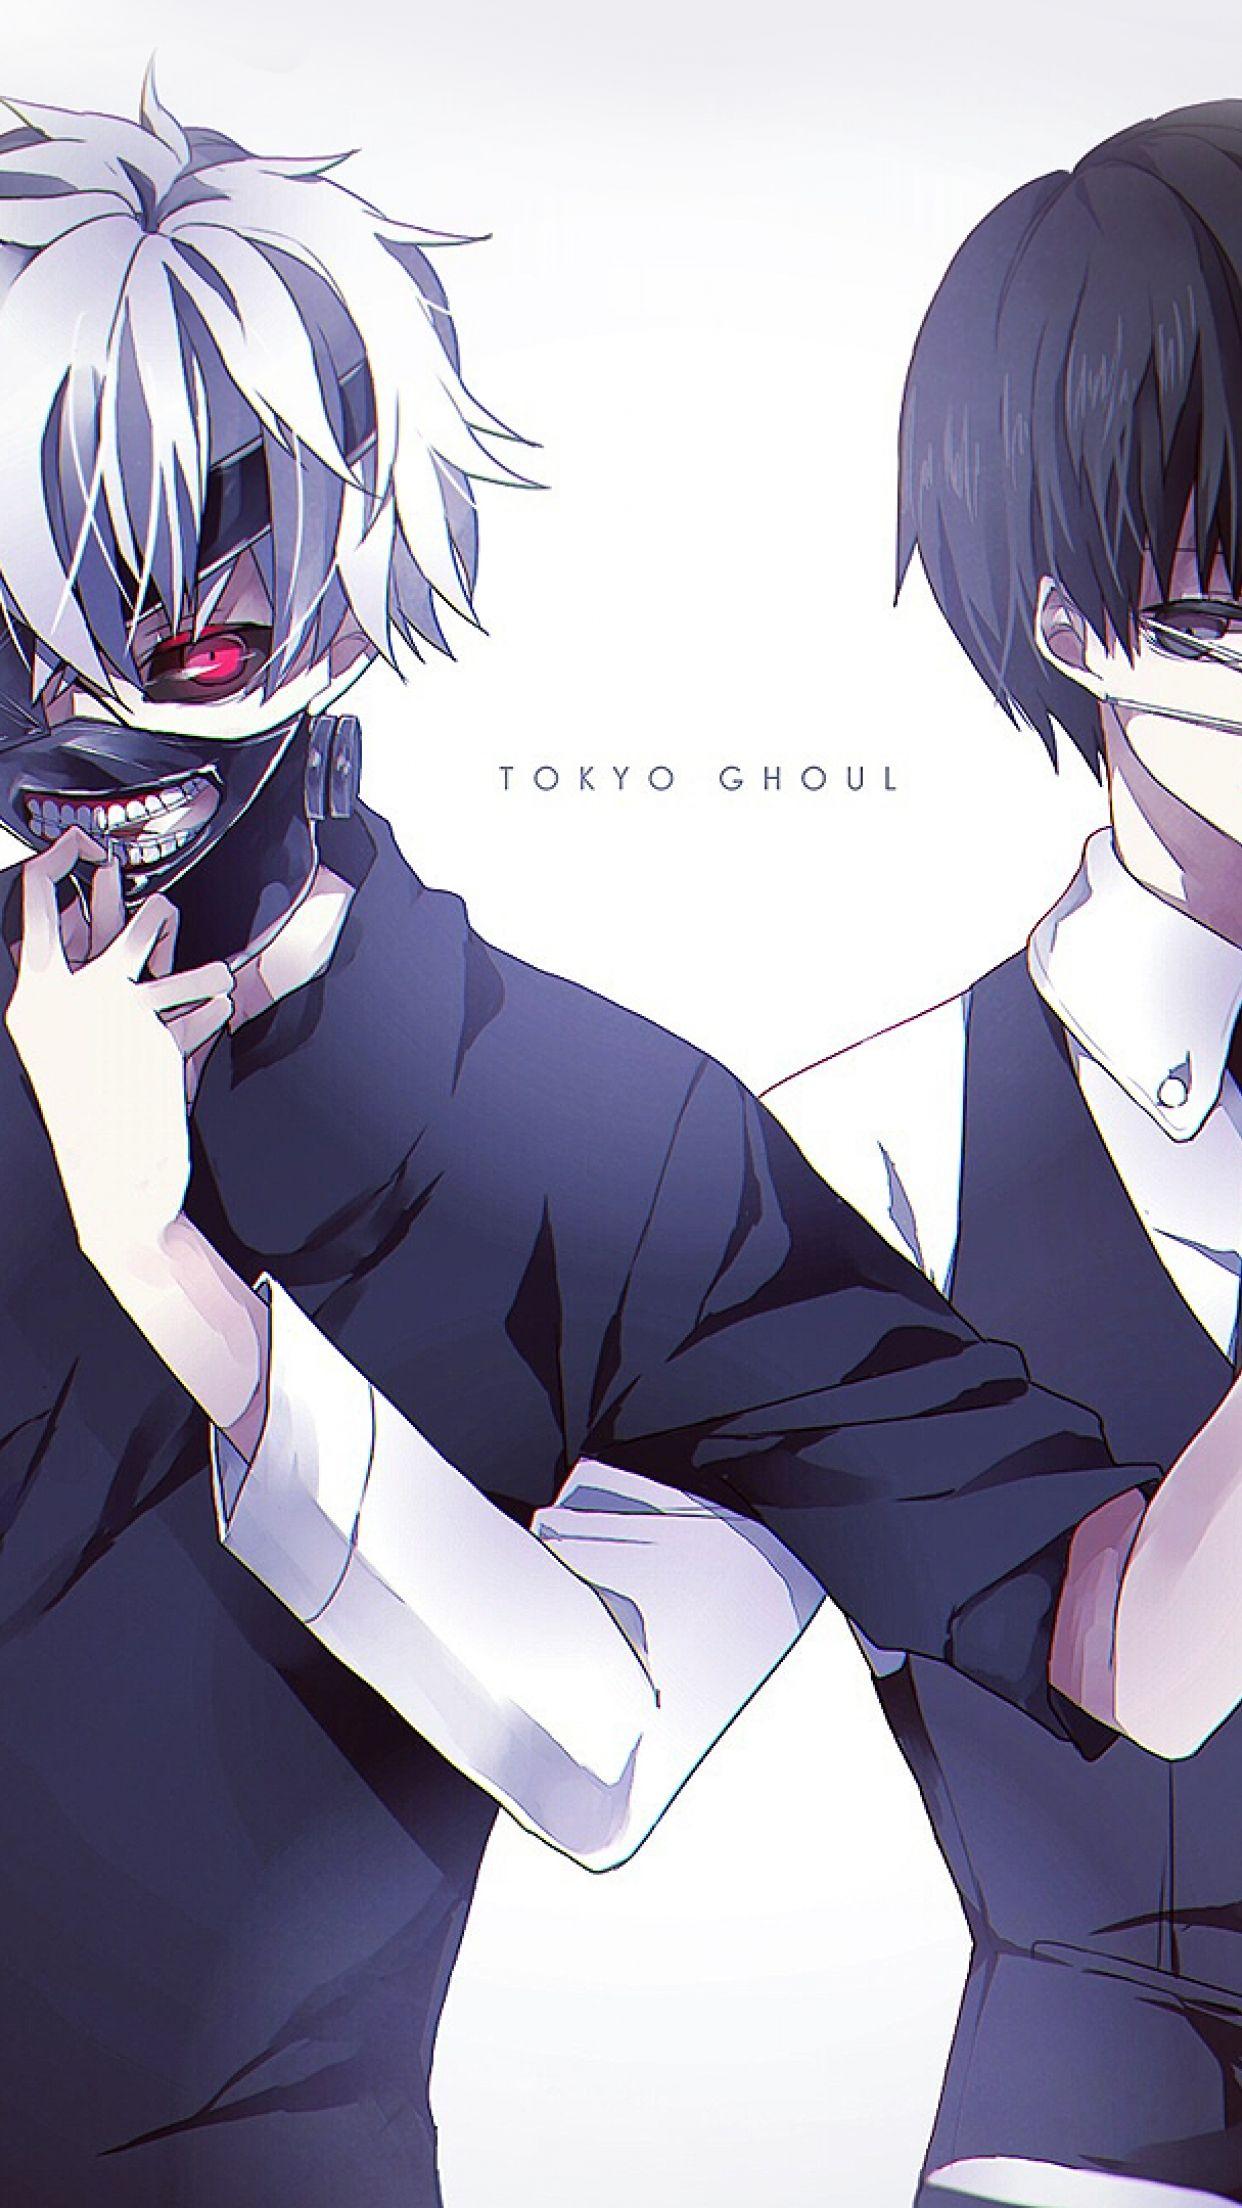 Tokyo Ghoul iPhone Wallpapers - Top Free Tokyo Ghoul ...